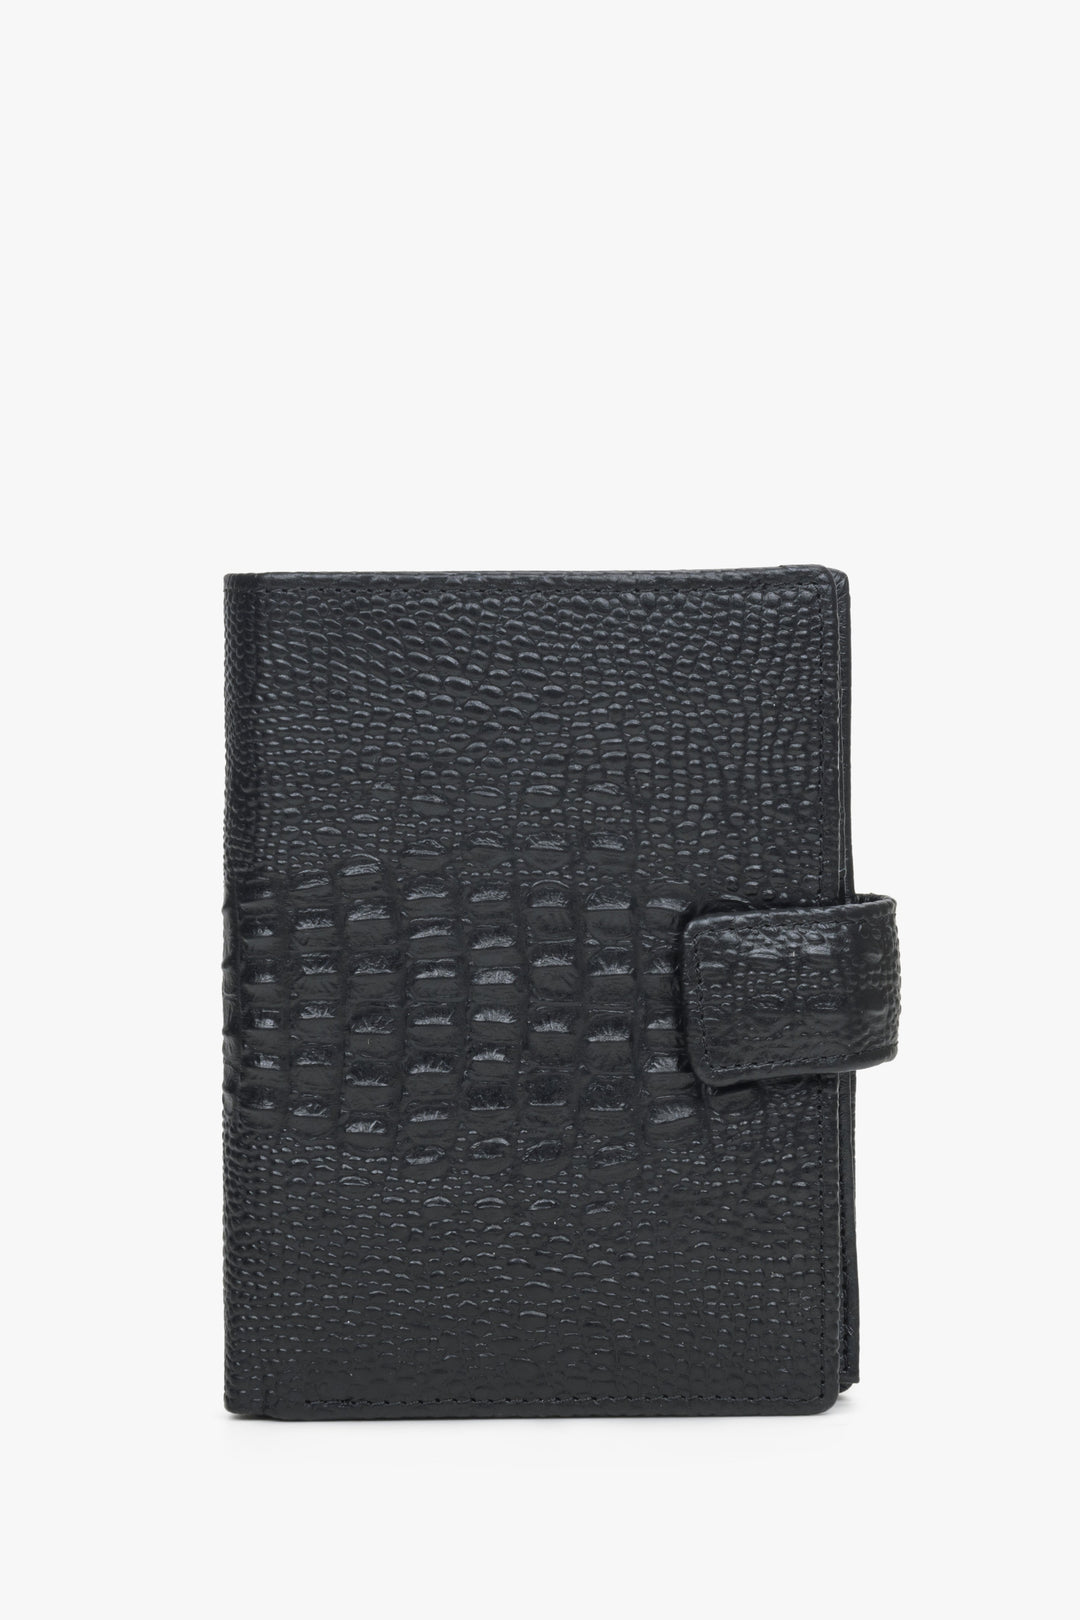 Men's Black Functional Wallet made of Genuine Leather Estro ER00114491.